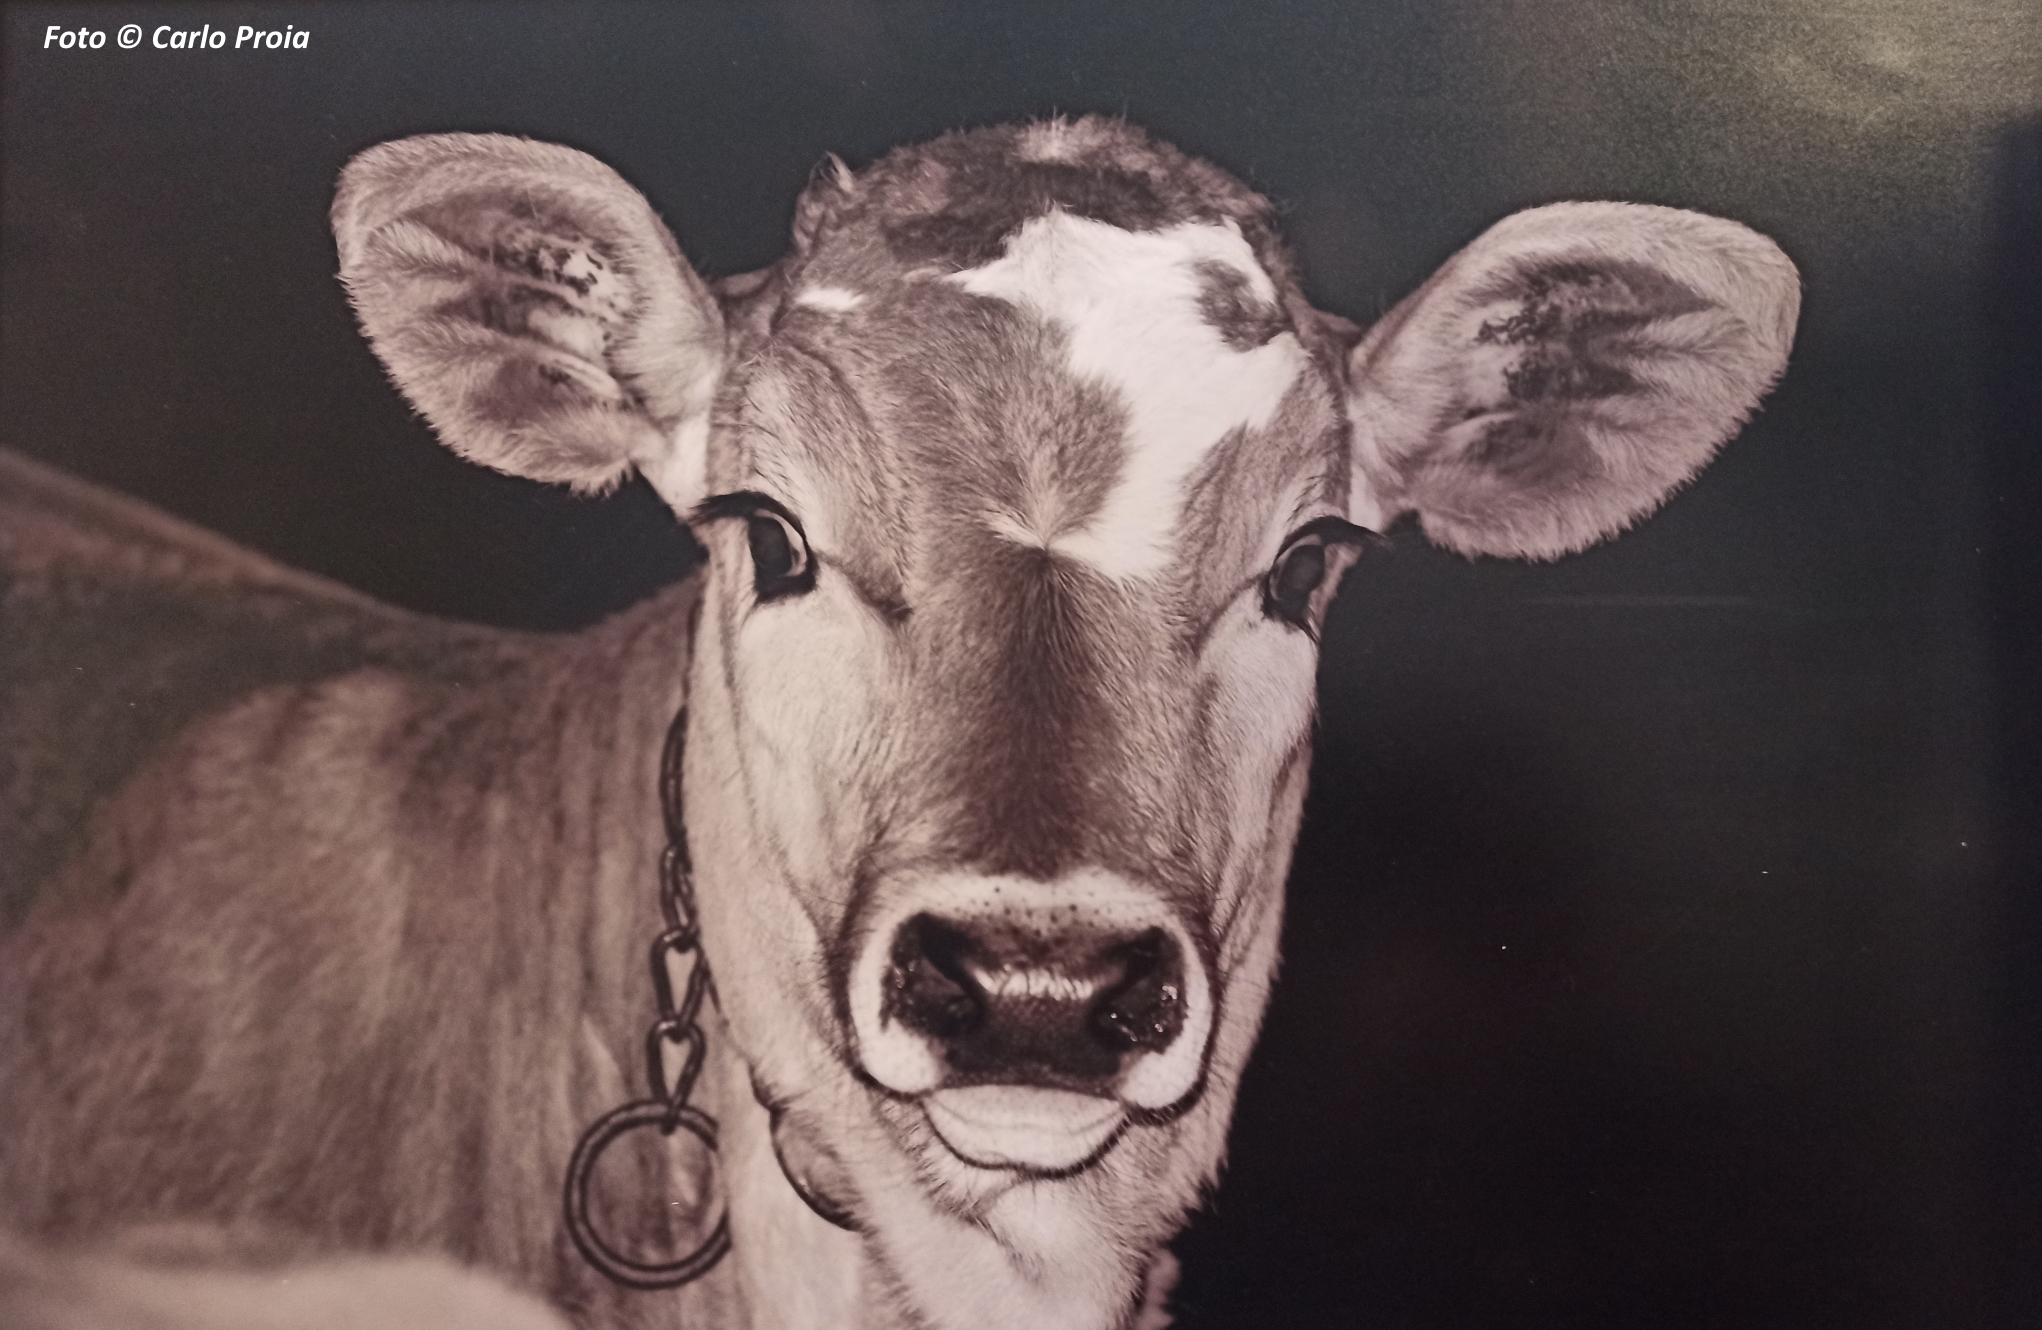 'Vacche e vitelli', foto di Carlo Proia. Un vitello scruta l'umano dallo strano oggetto (il fotografo)